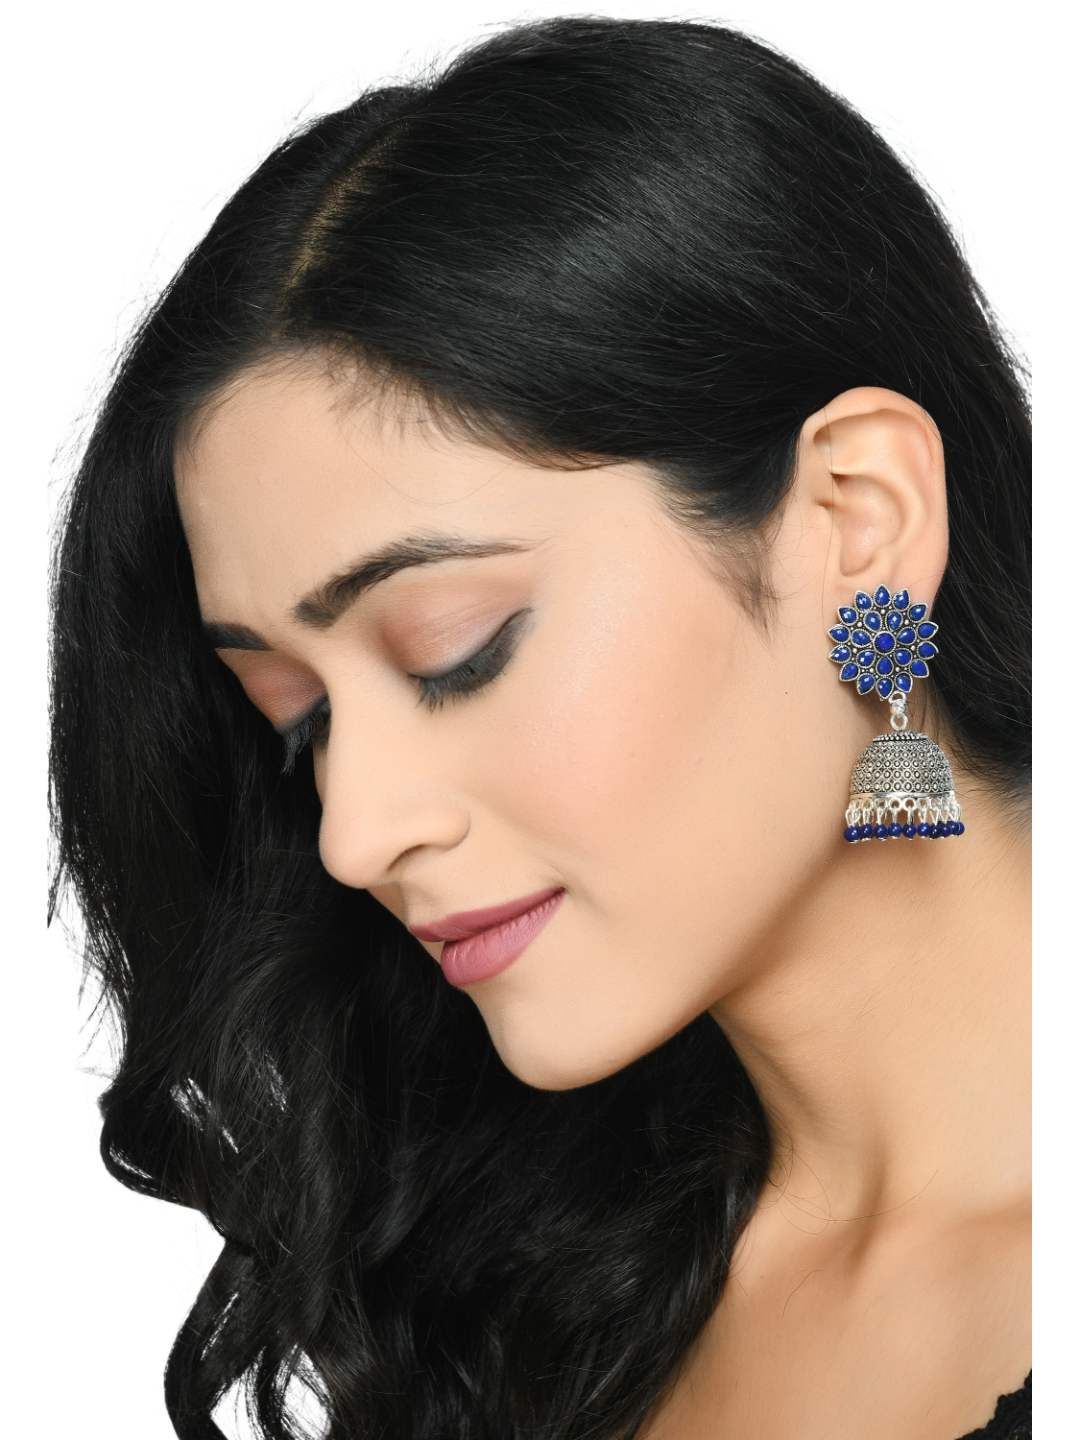 Blue Oxydized Silver Jhumka Earrings by Kamal Jihar (1 Pair earrings)